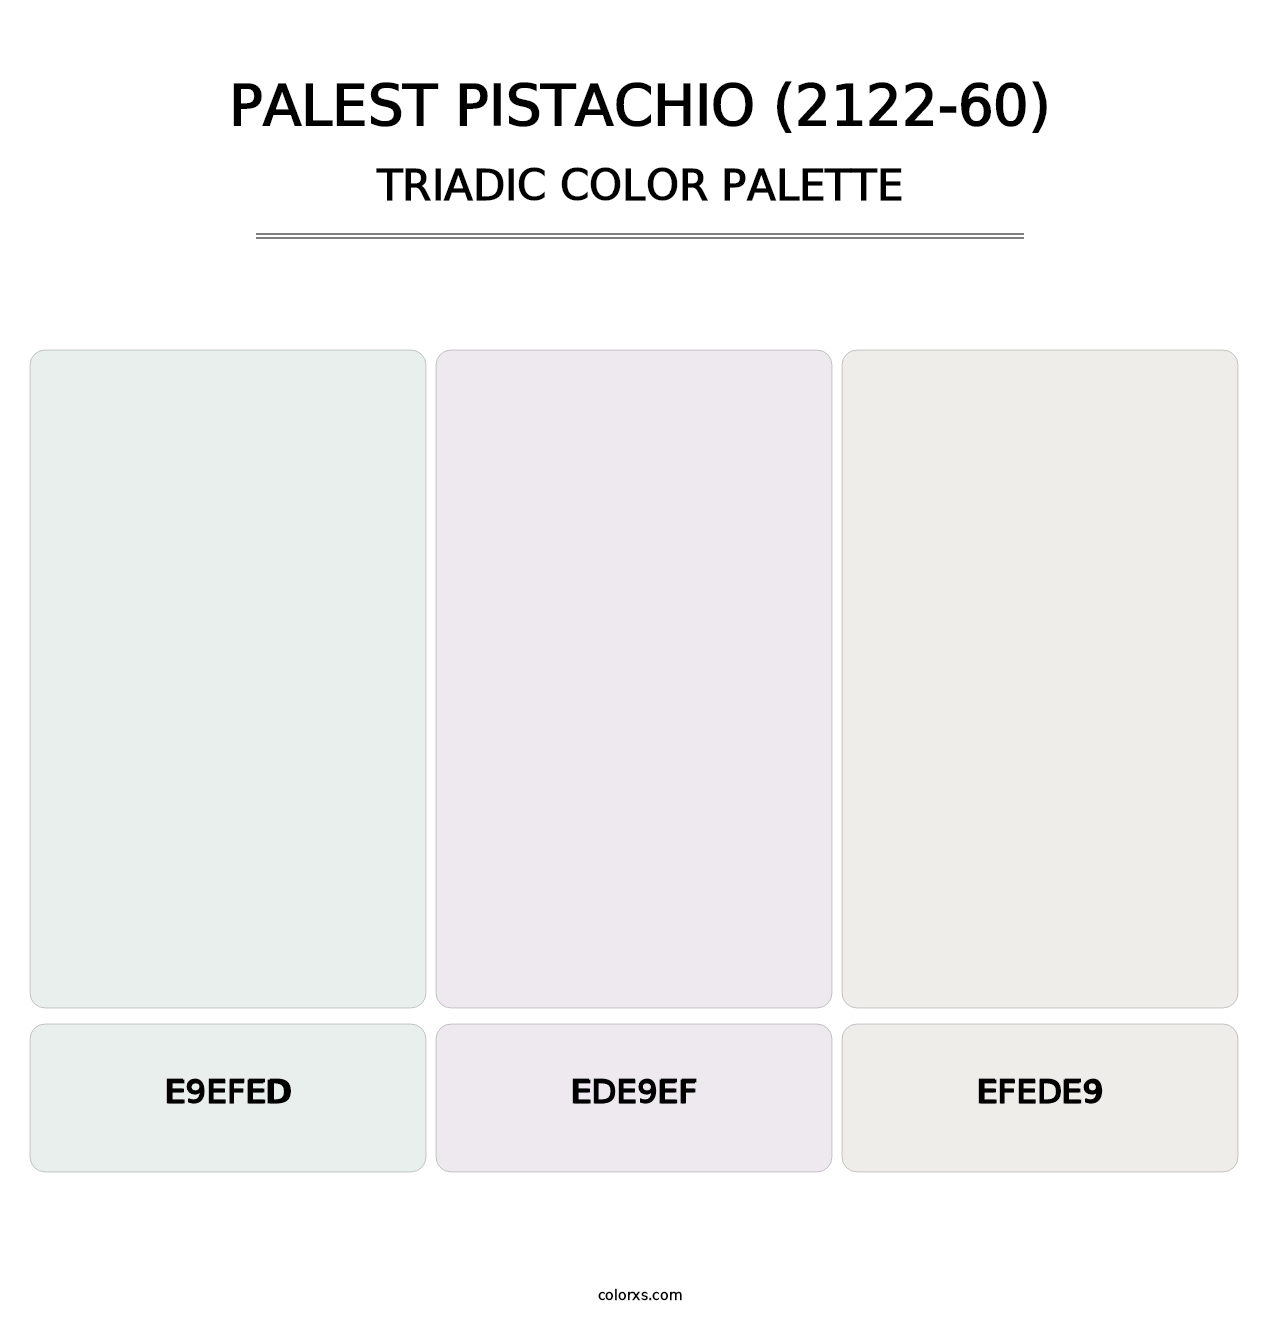 Palest Pistachio (2122-60) - Triadic Color Palette